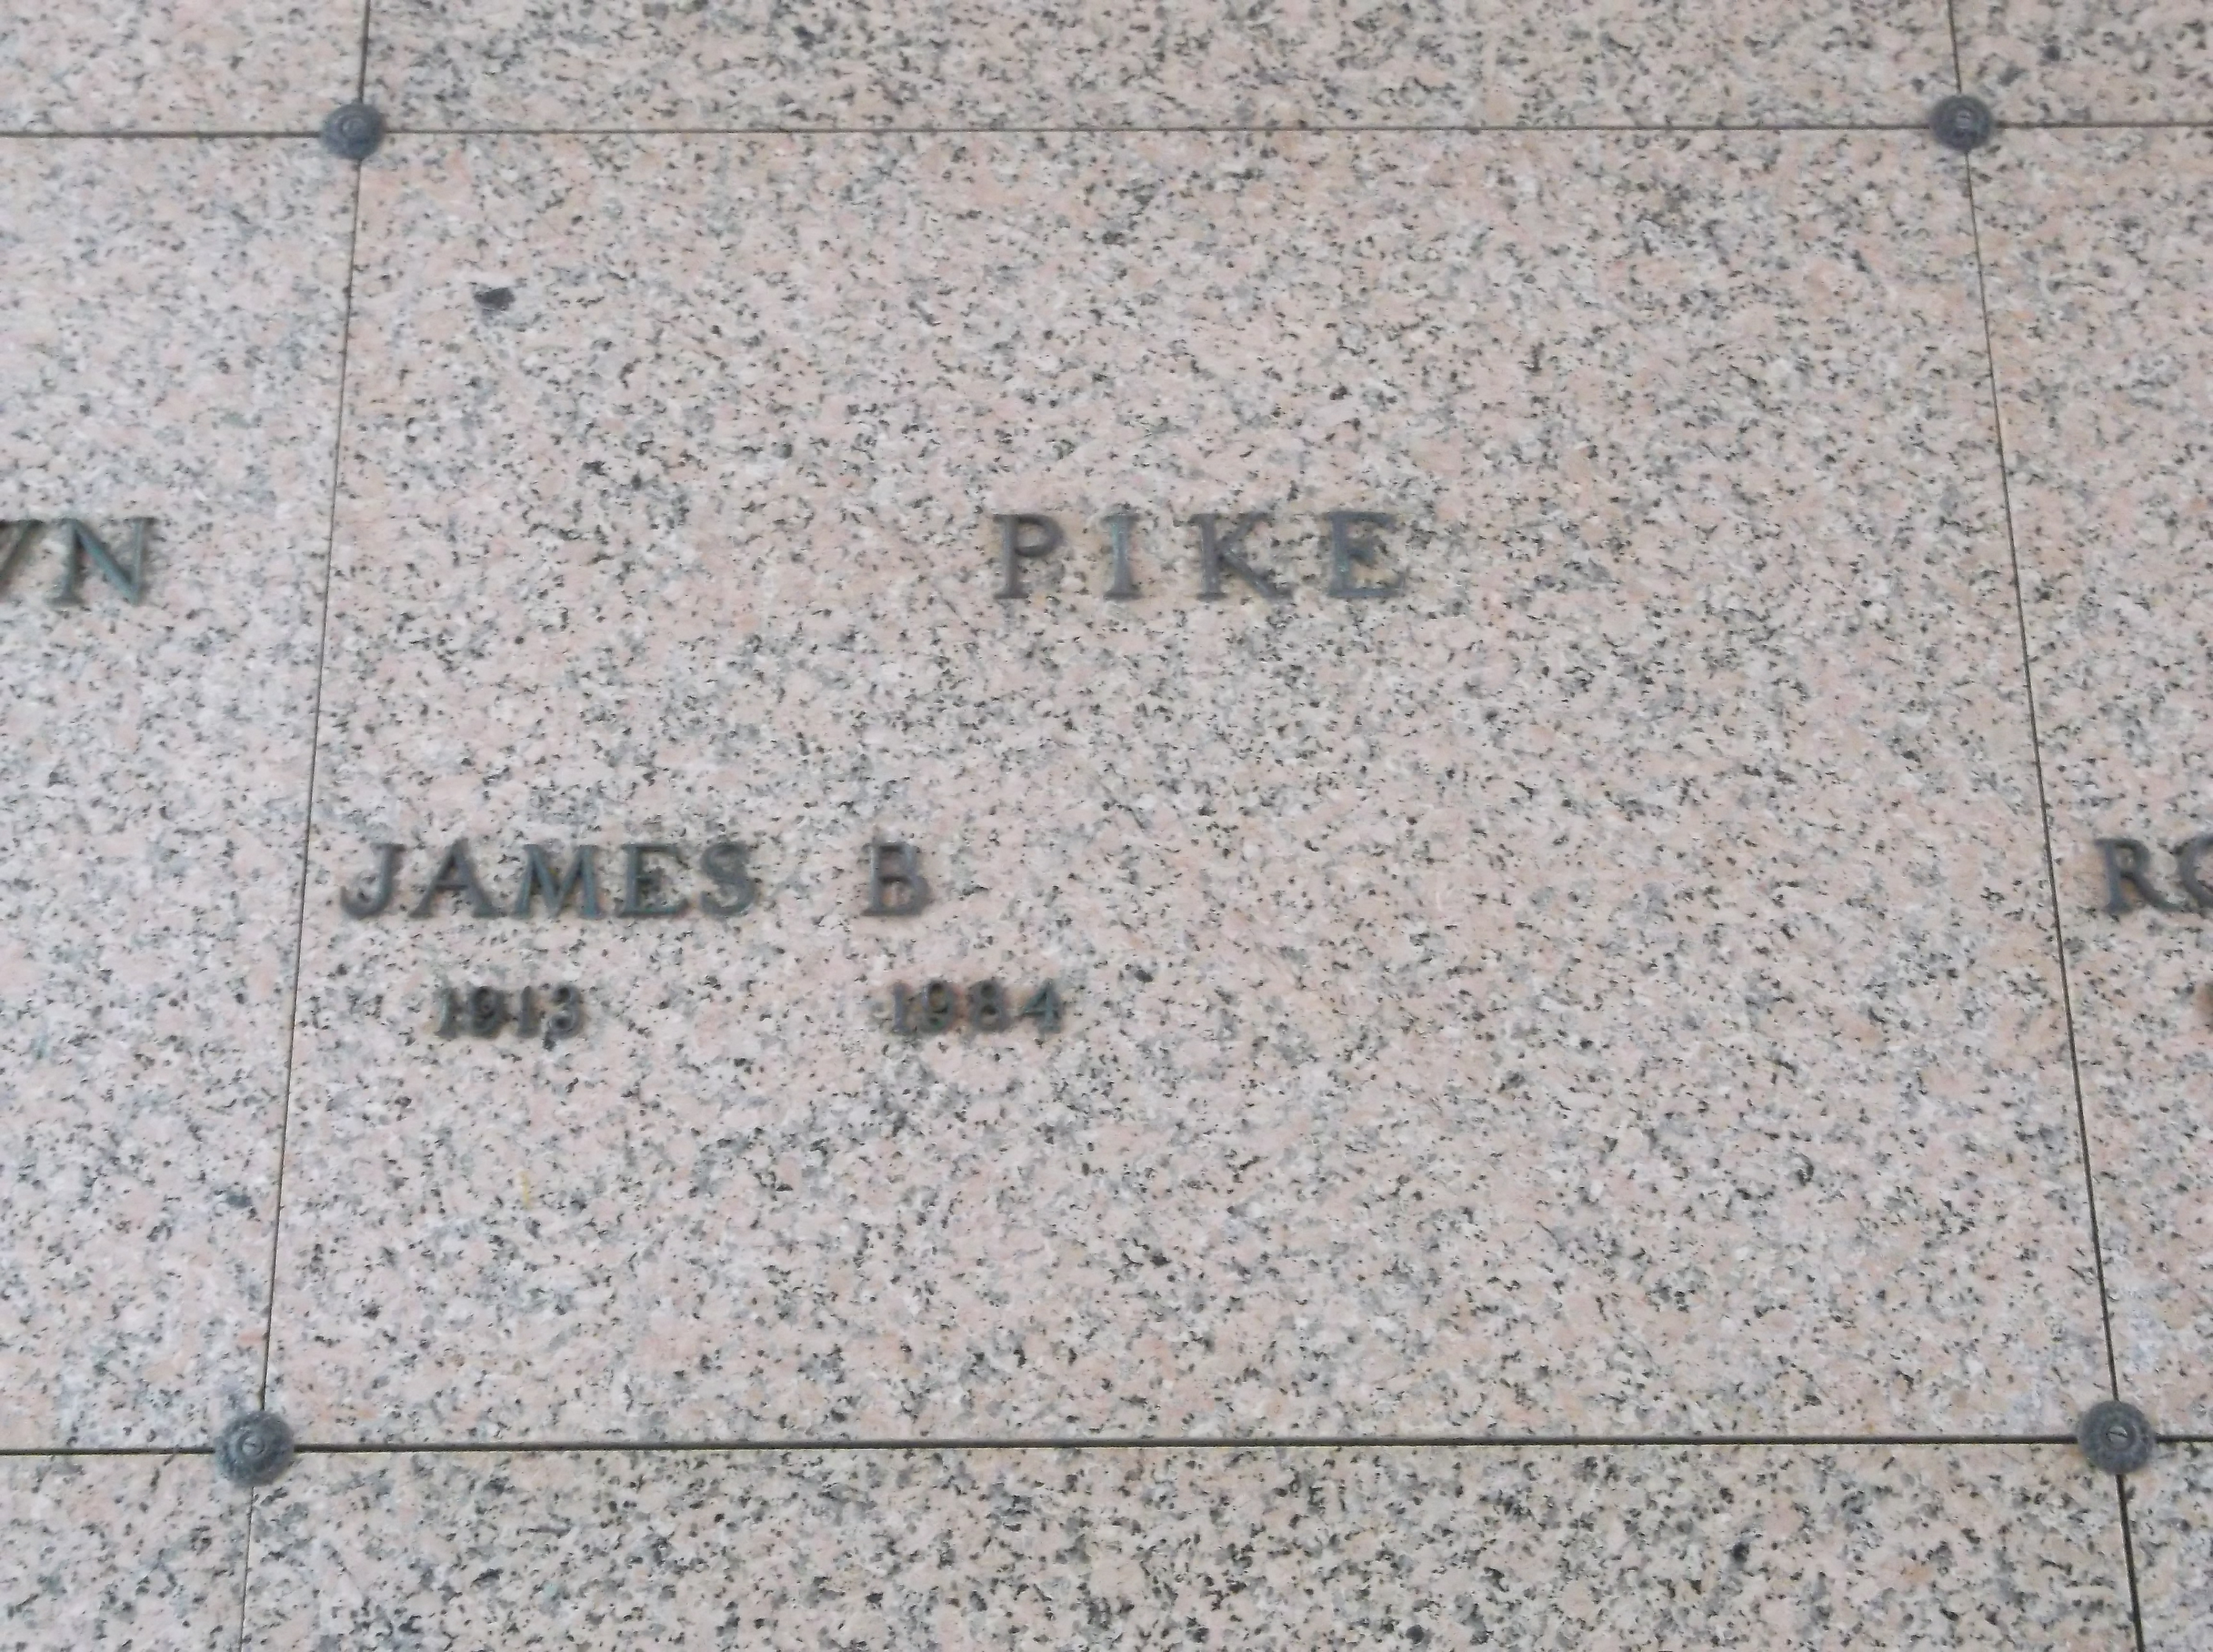 James B Pike